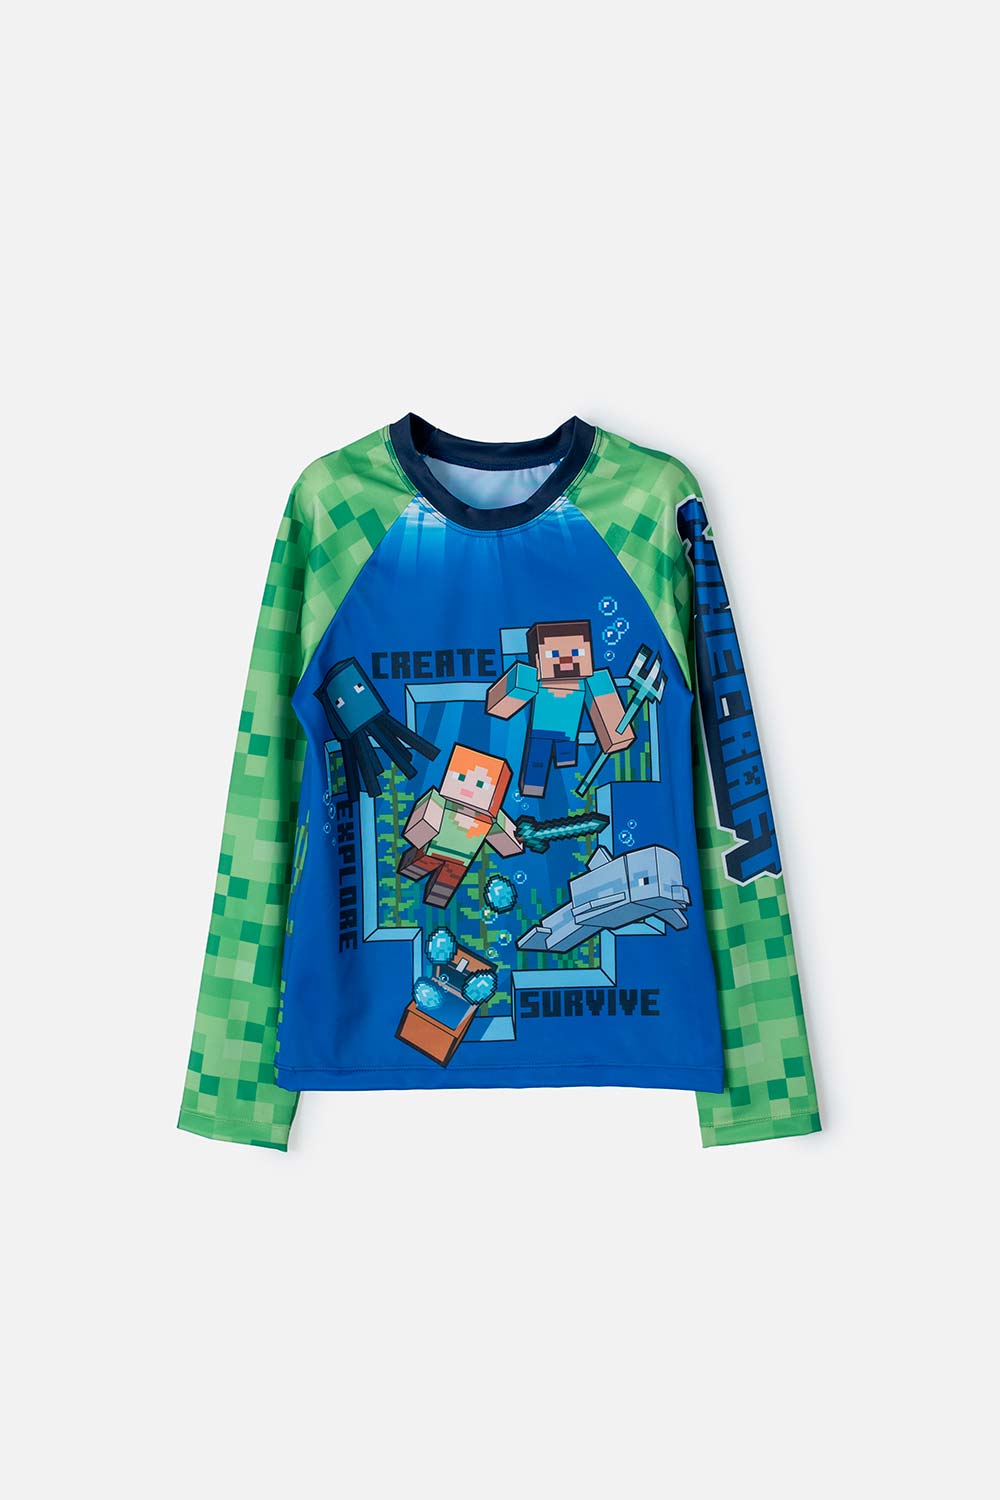 Camiseta de baño de Minecraft verde y azul manga larga para niño 6-0